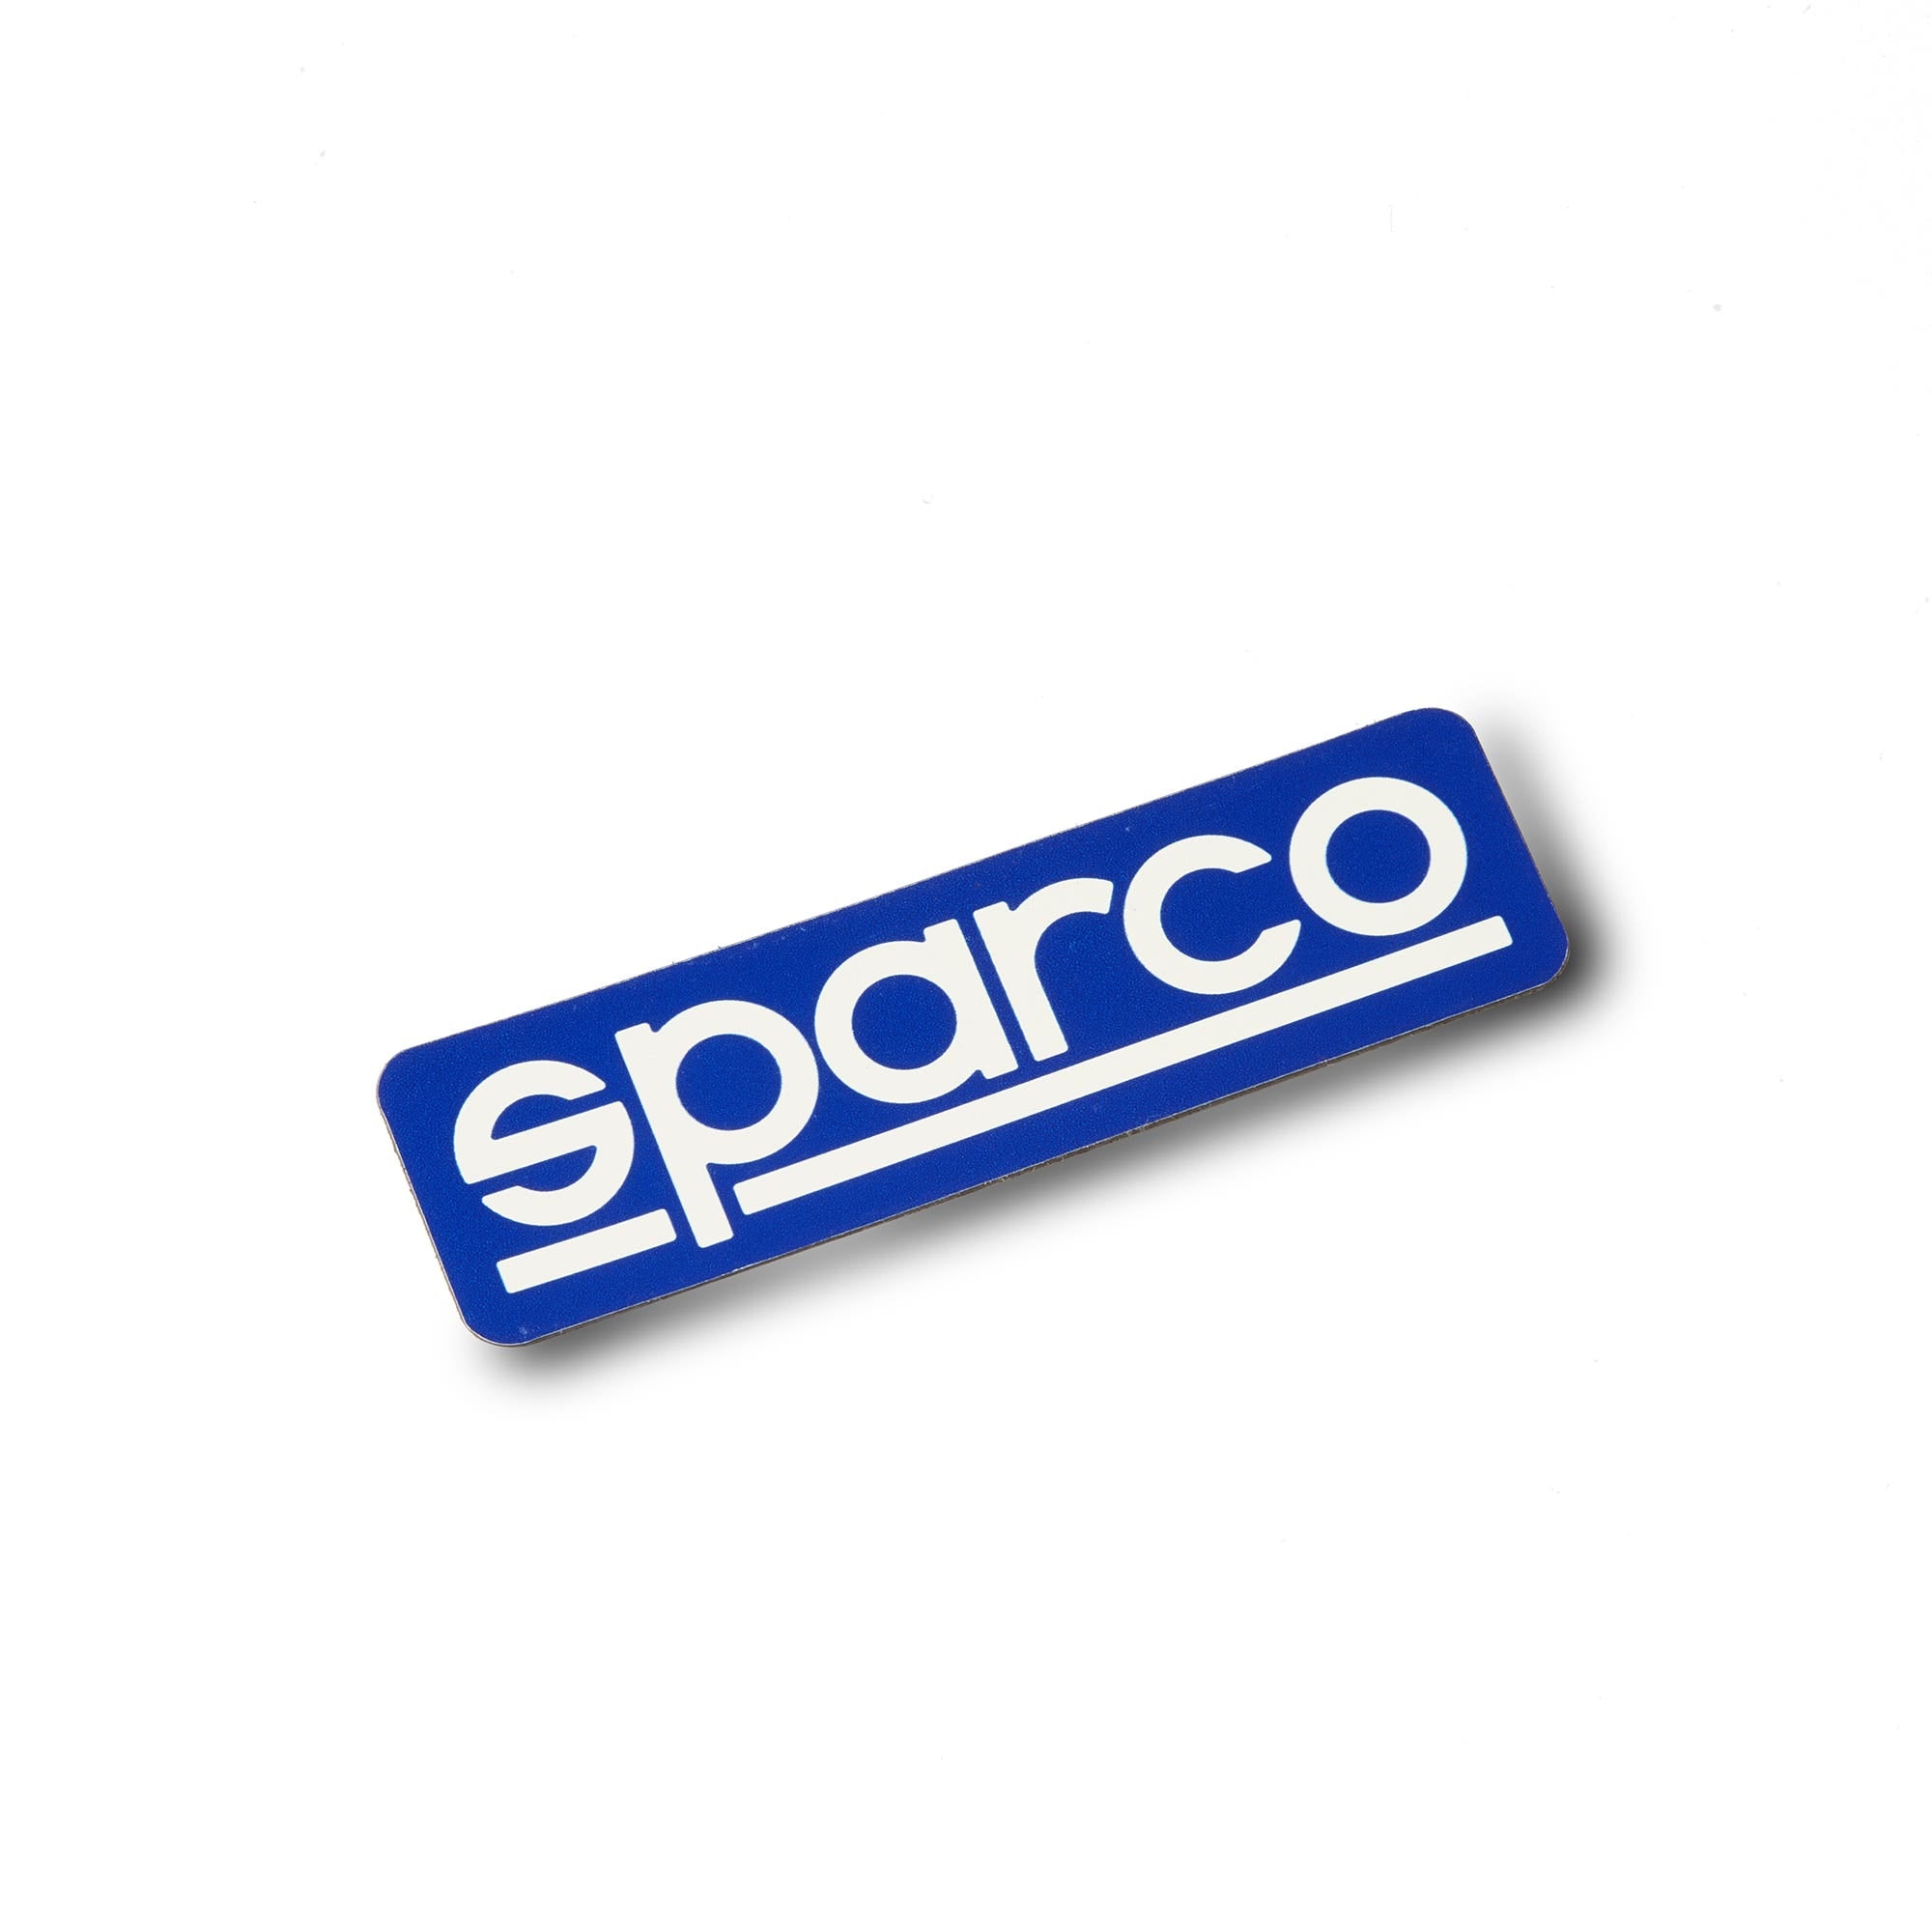 MAGNET SPARCO - Sparco Shop